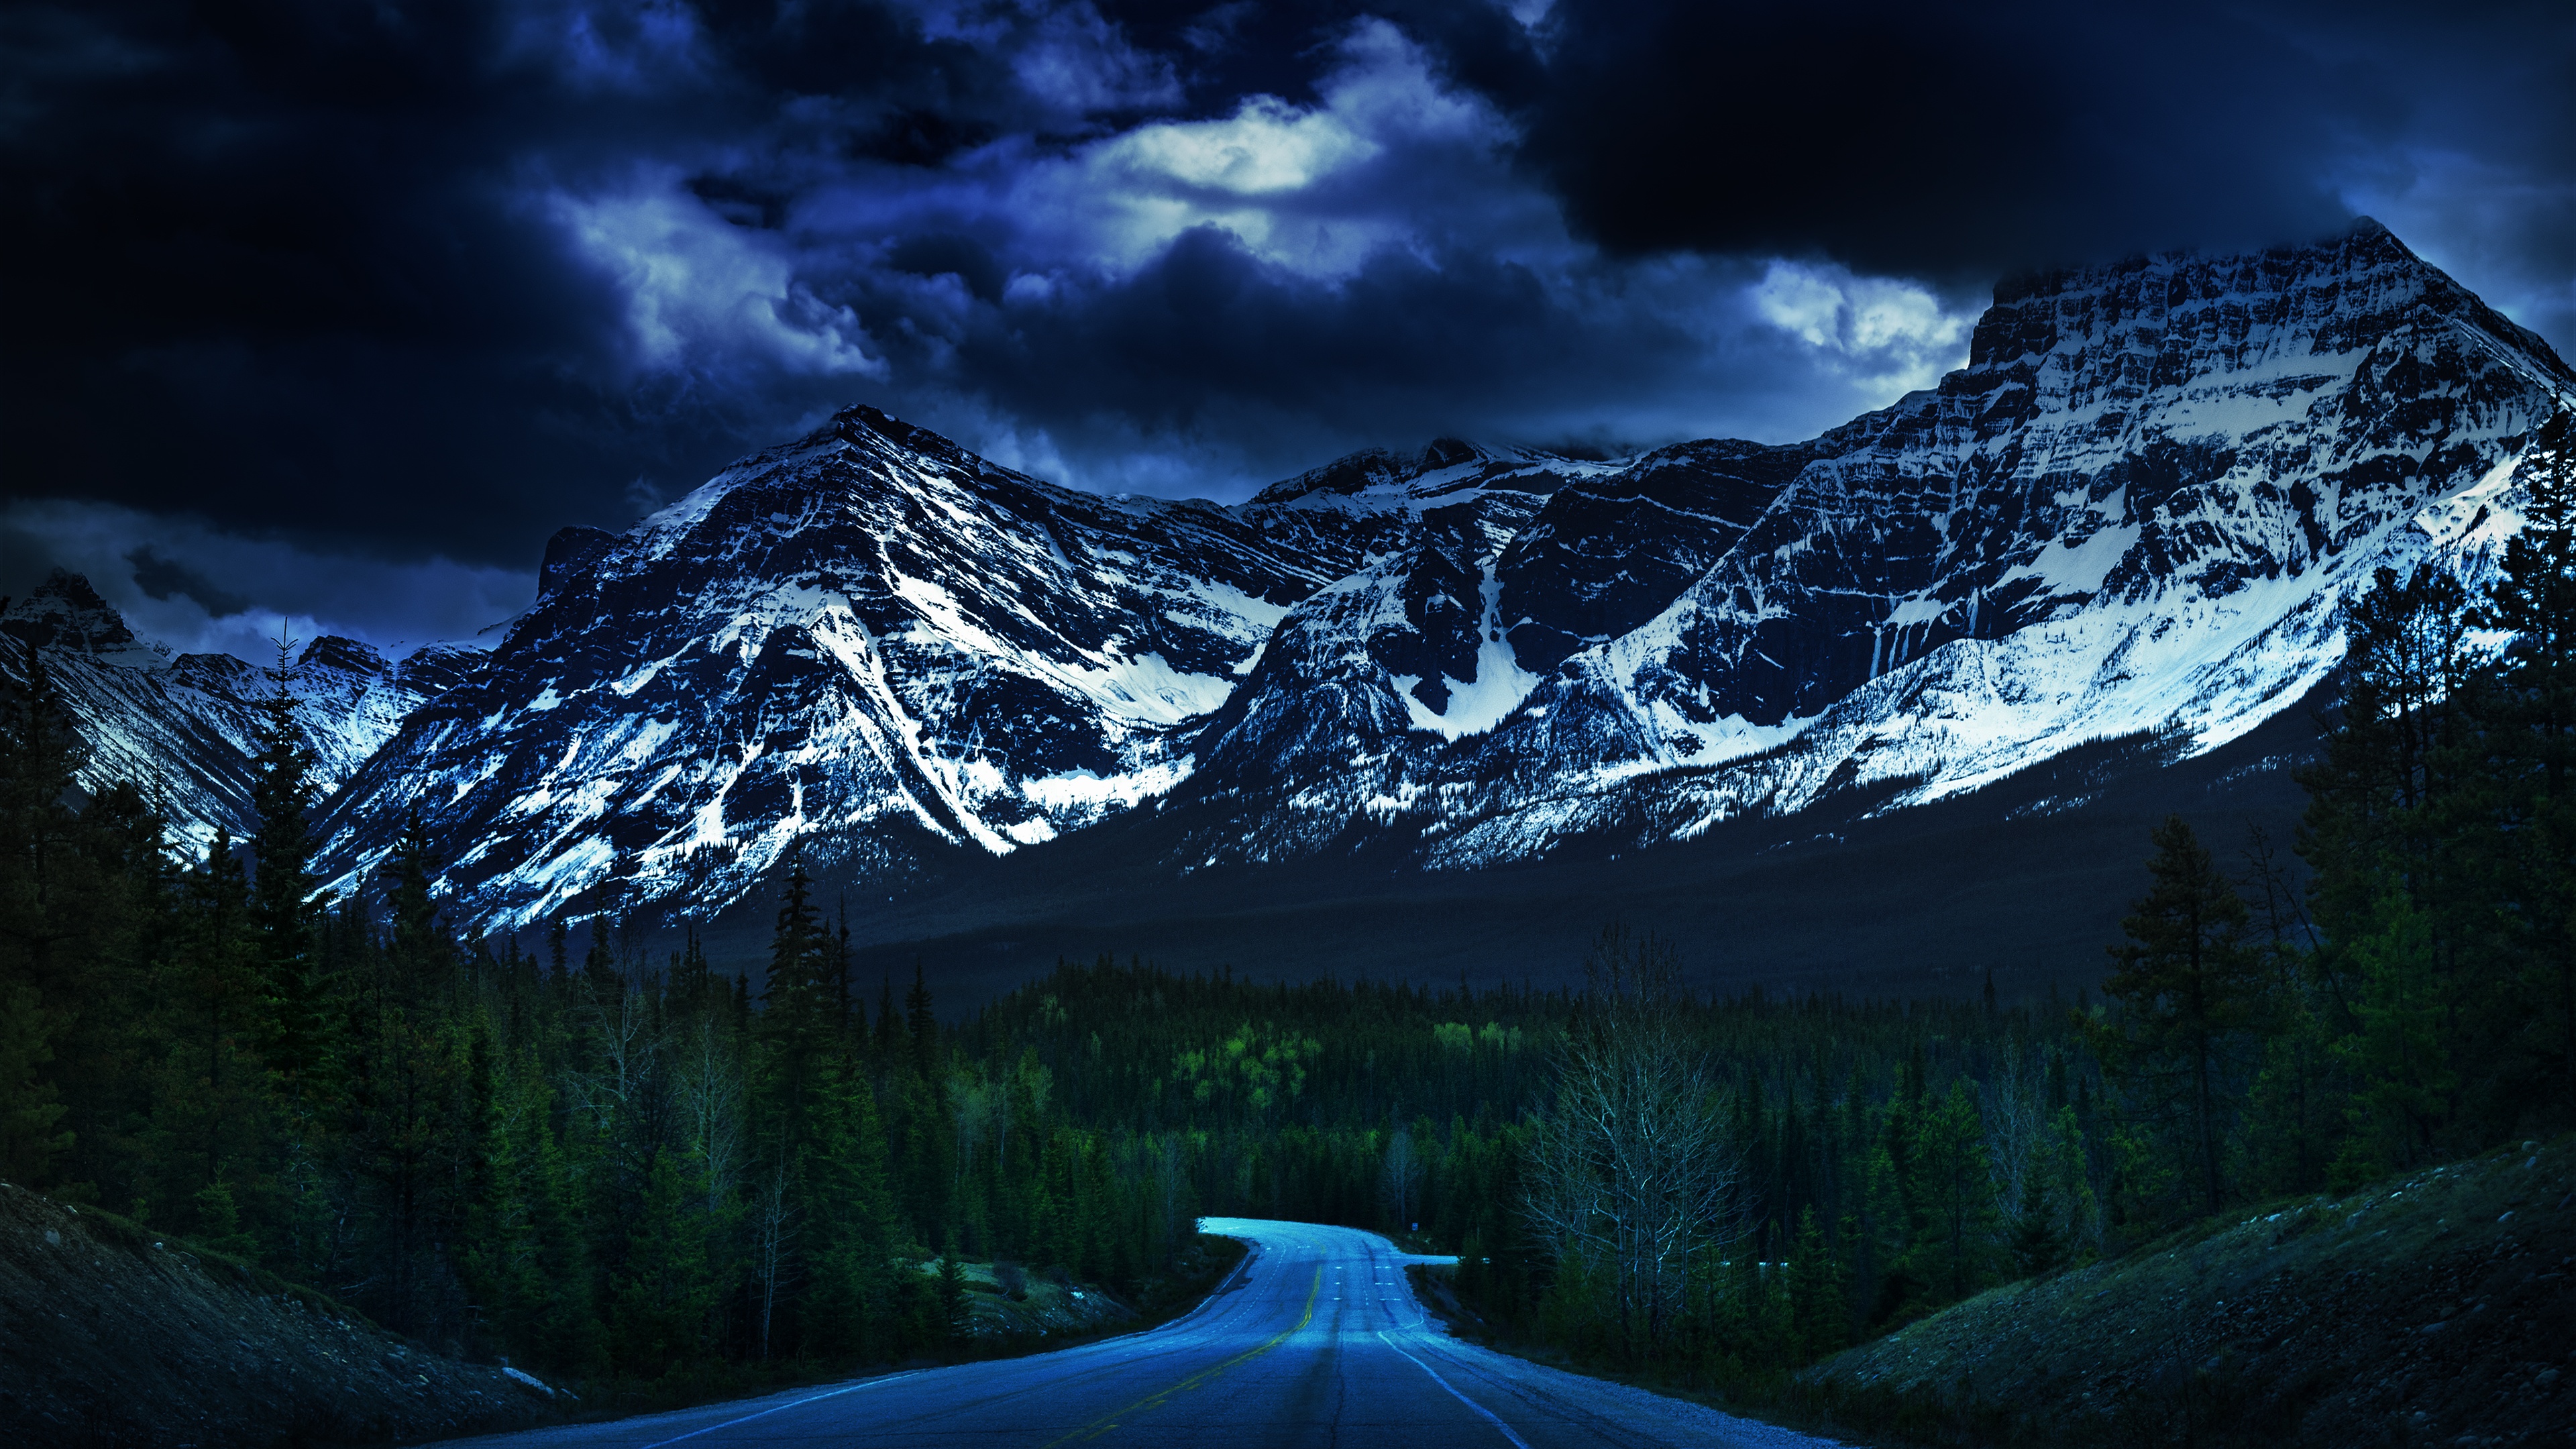 Hình nền đường cao tốc băng Canadian Rockies 4K tải xuống: Được chụp bởi nhiếp ảnh gia tài năng, hình nền về đường cao tốc băng Canadian Rockies 4K sẽ đưa bạn đến những cảnh quan đẹp nhất của căn cứ quân sự Banff. Hãy tải xuống hình nền này và cảm nhận sự đẹp đẽ của thiên nhiên đồng thời tận hưởng khát khao viễn tưởng của mình!